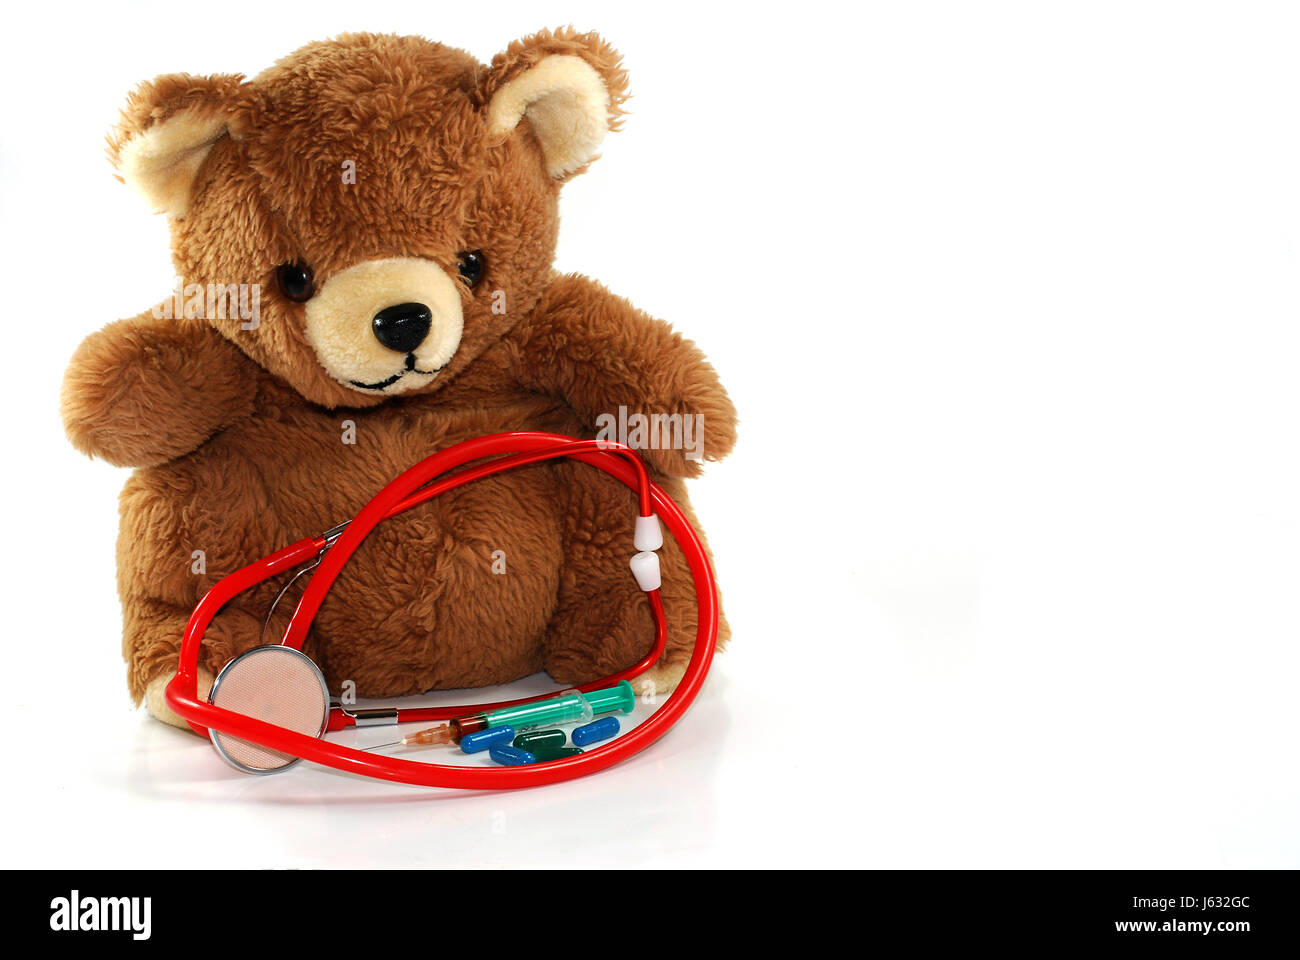 bear teddy teddy bear teddybear means agent medicine drug remedy substance Stock Photo